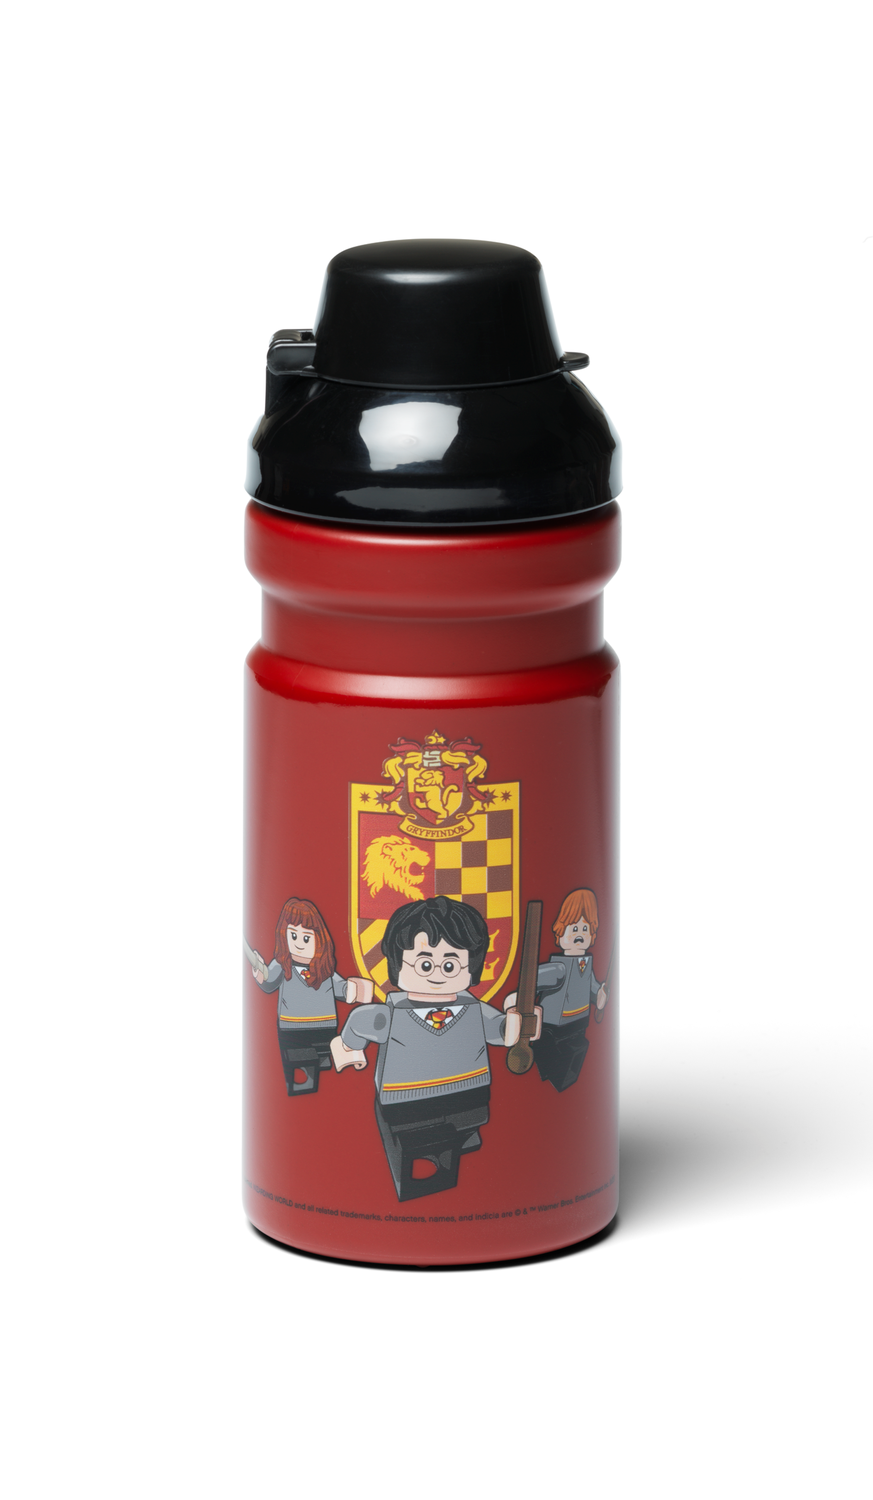 Gryffindor™ Drinking Bottle 5007892, Harry Potter™